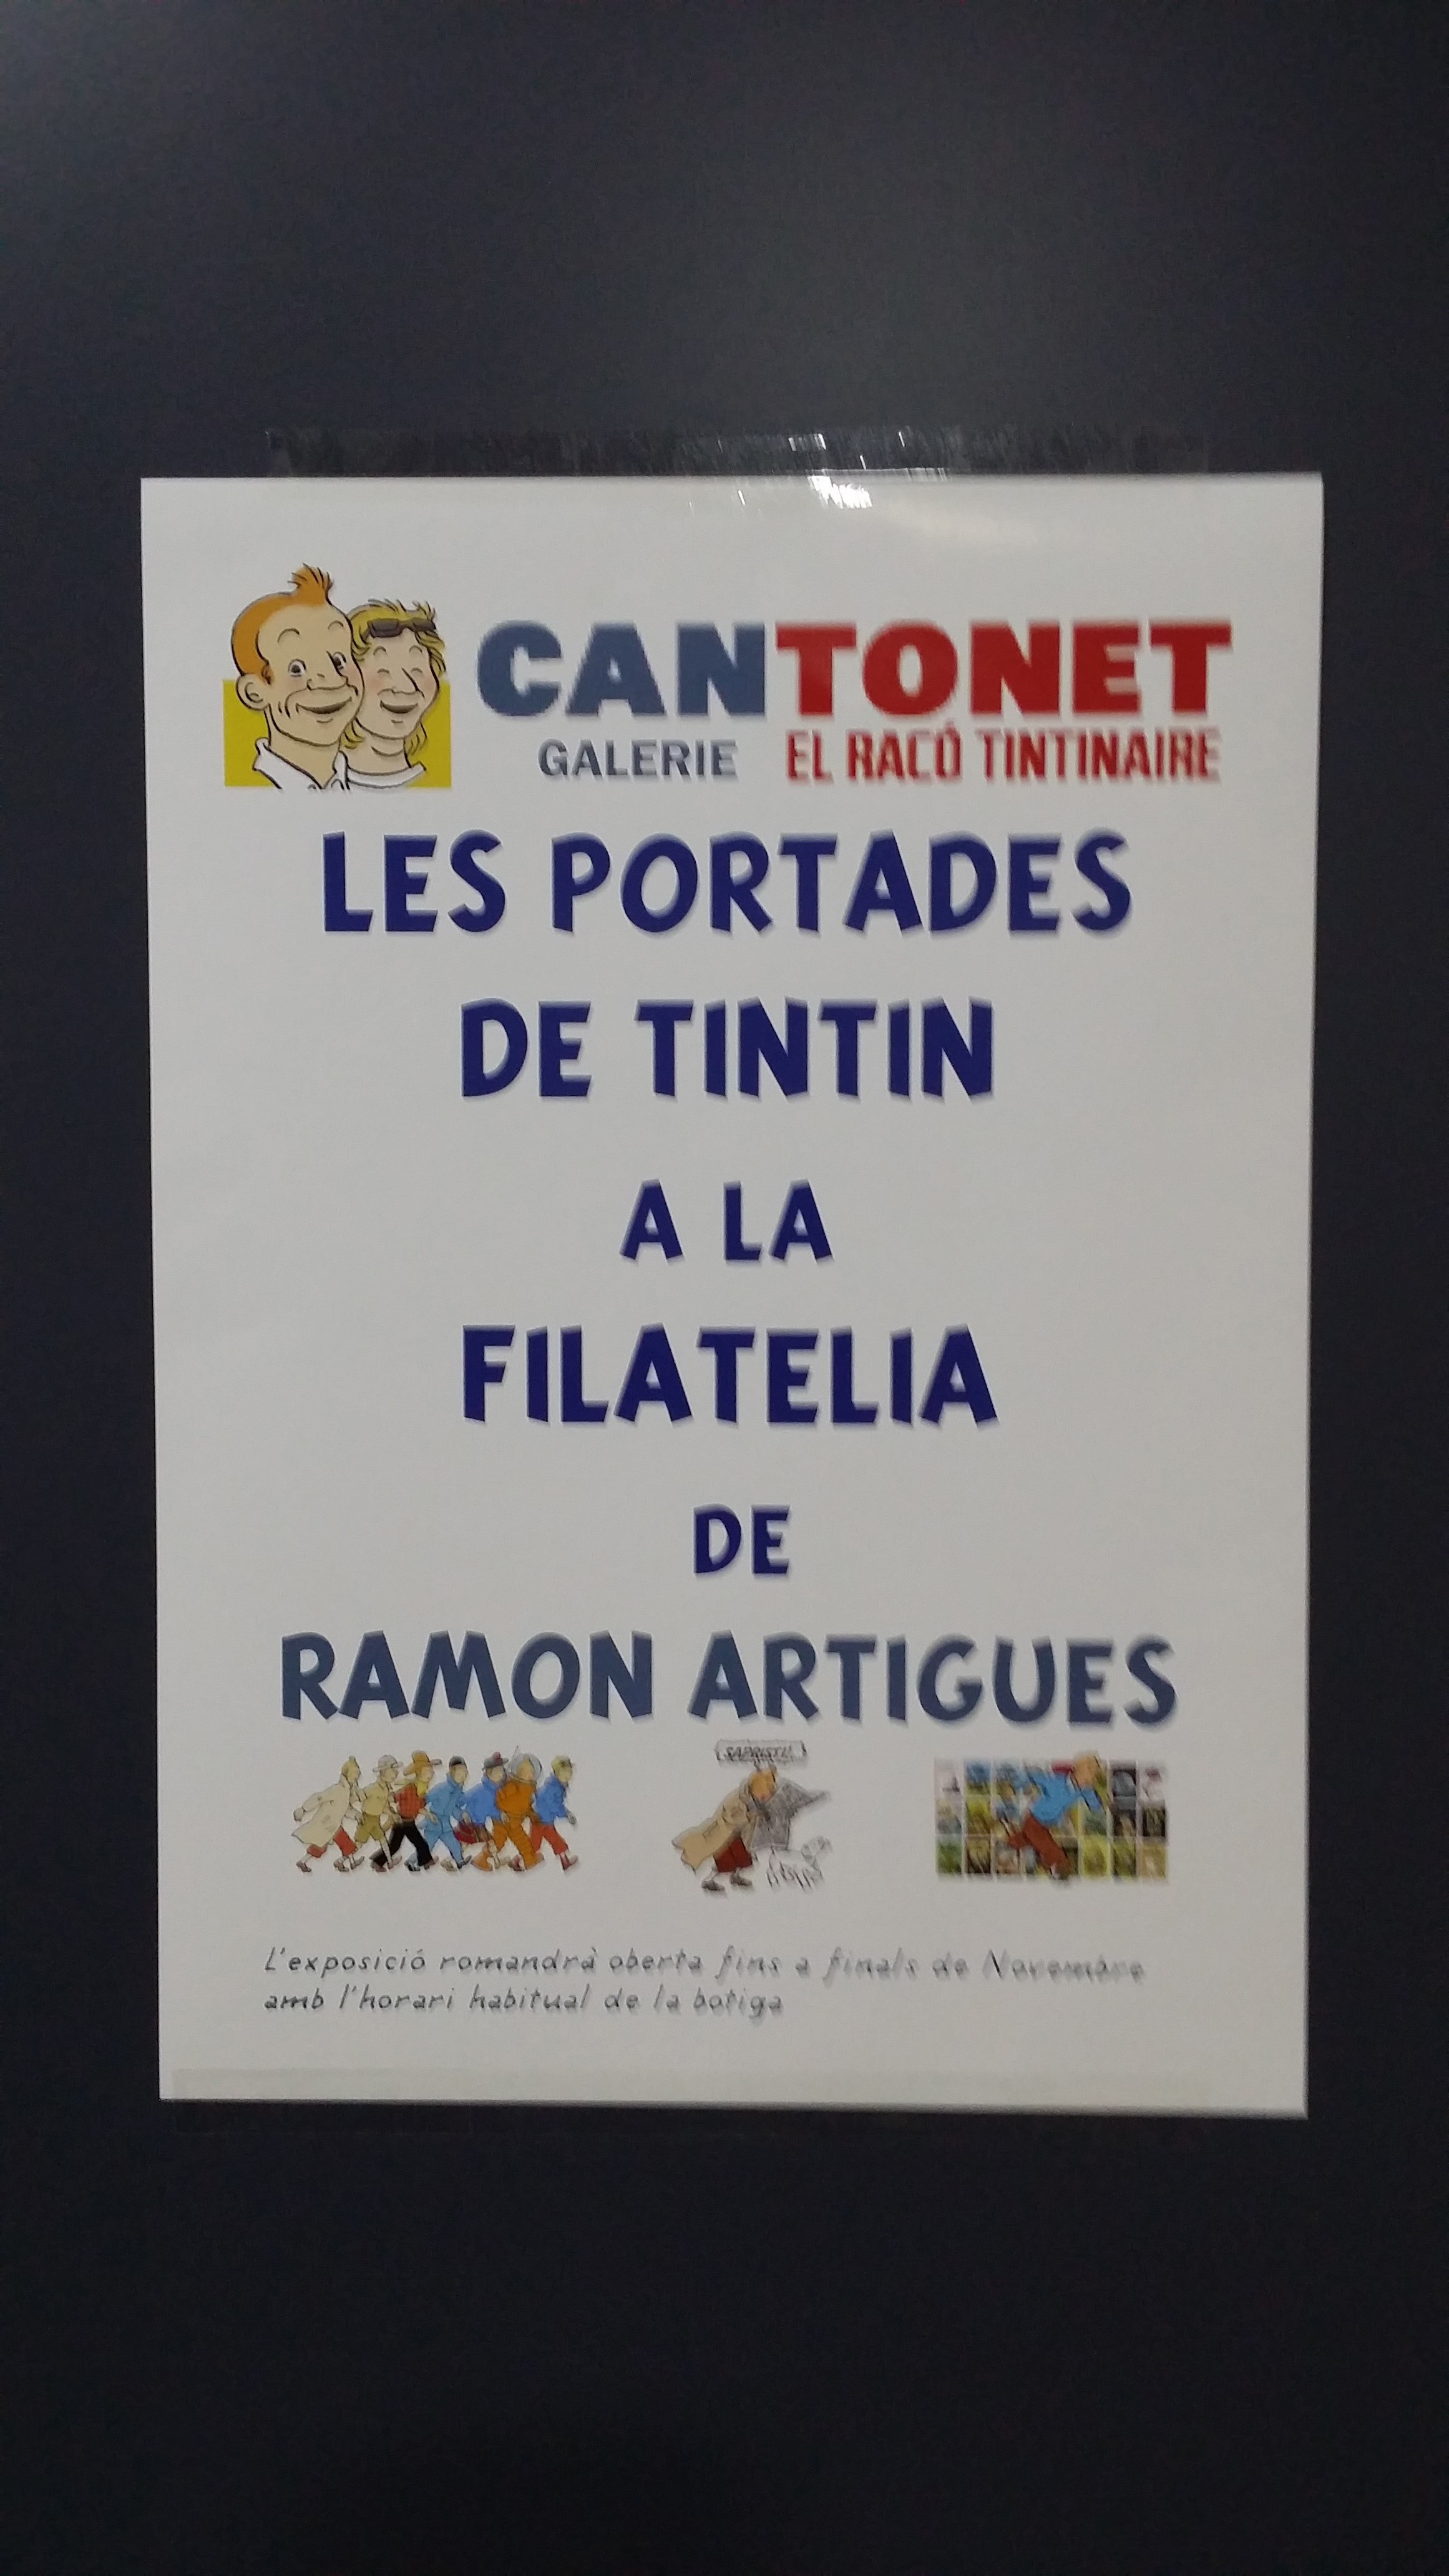 Exposición filatélica en Cantonet